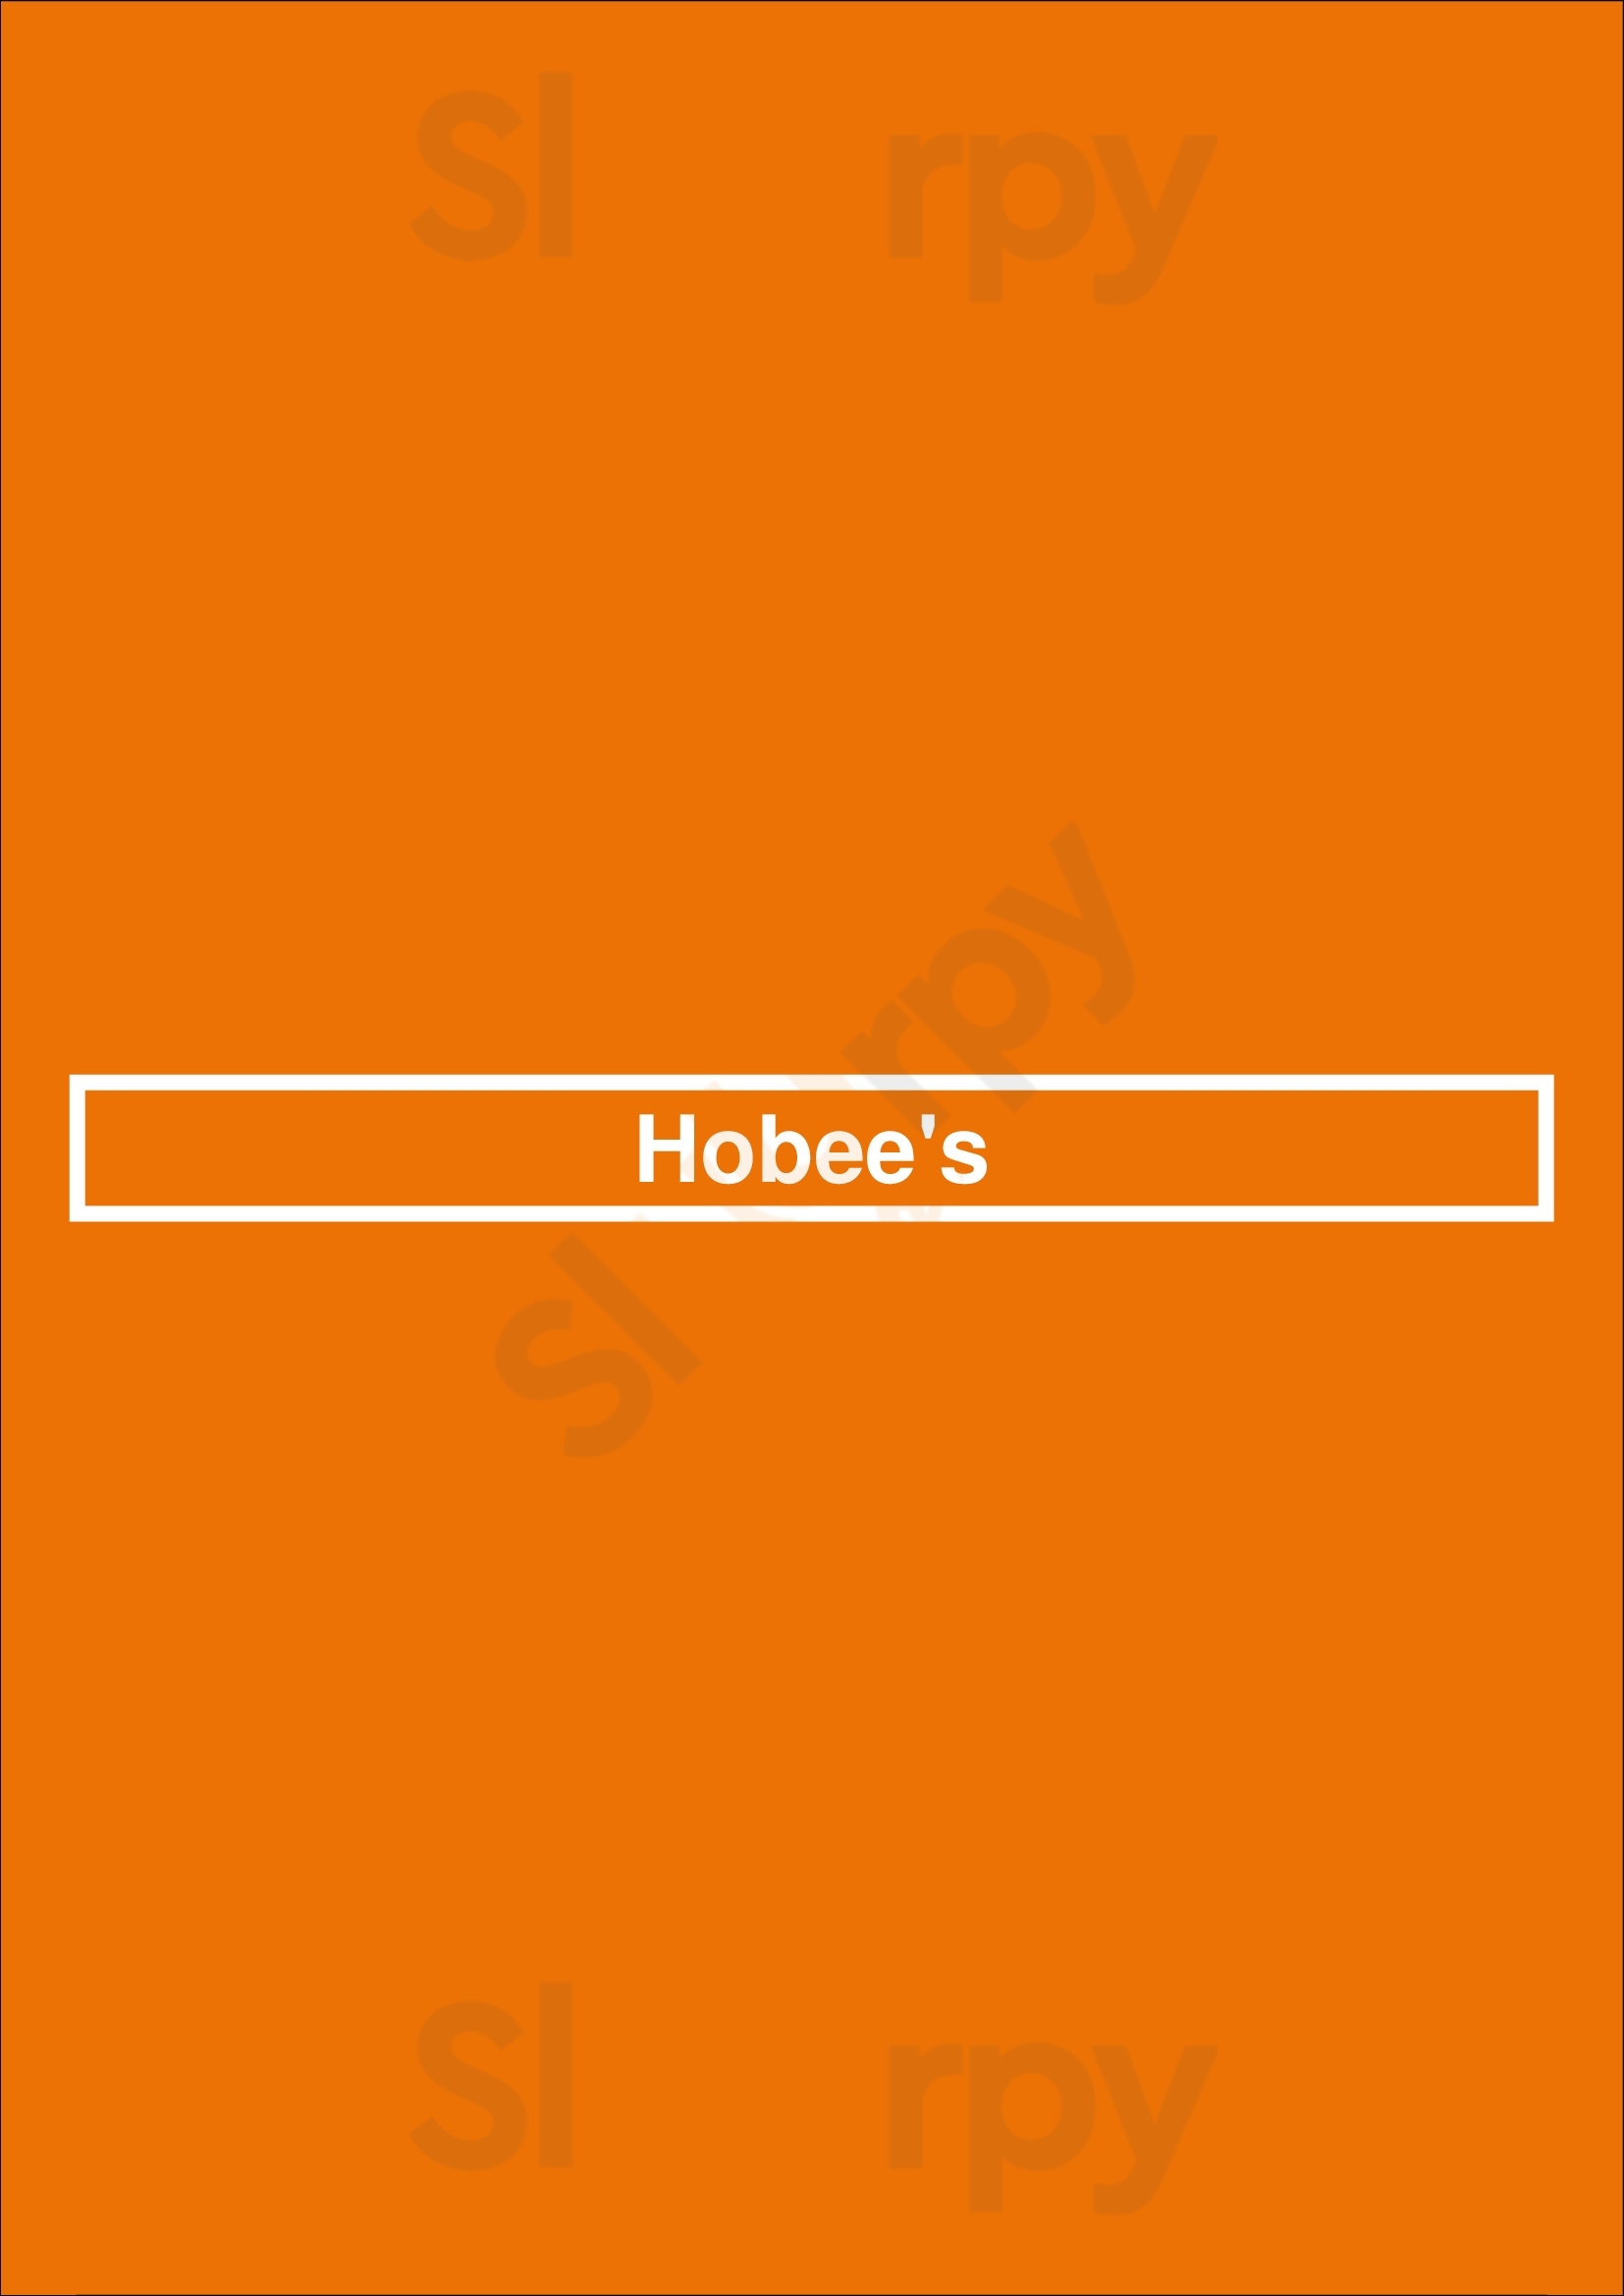 Hobee's Belmont Menu - 1